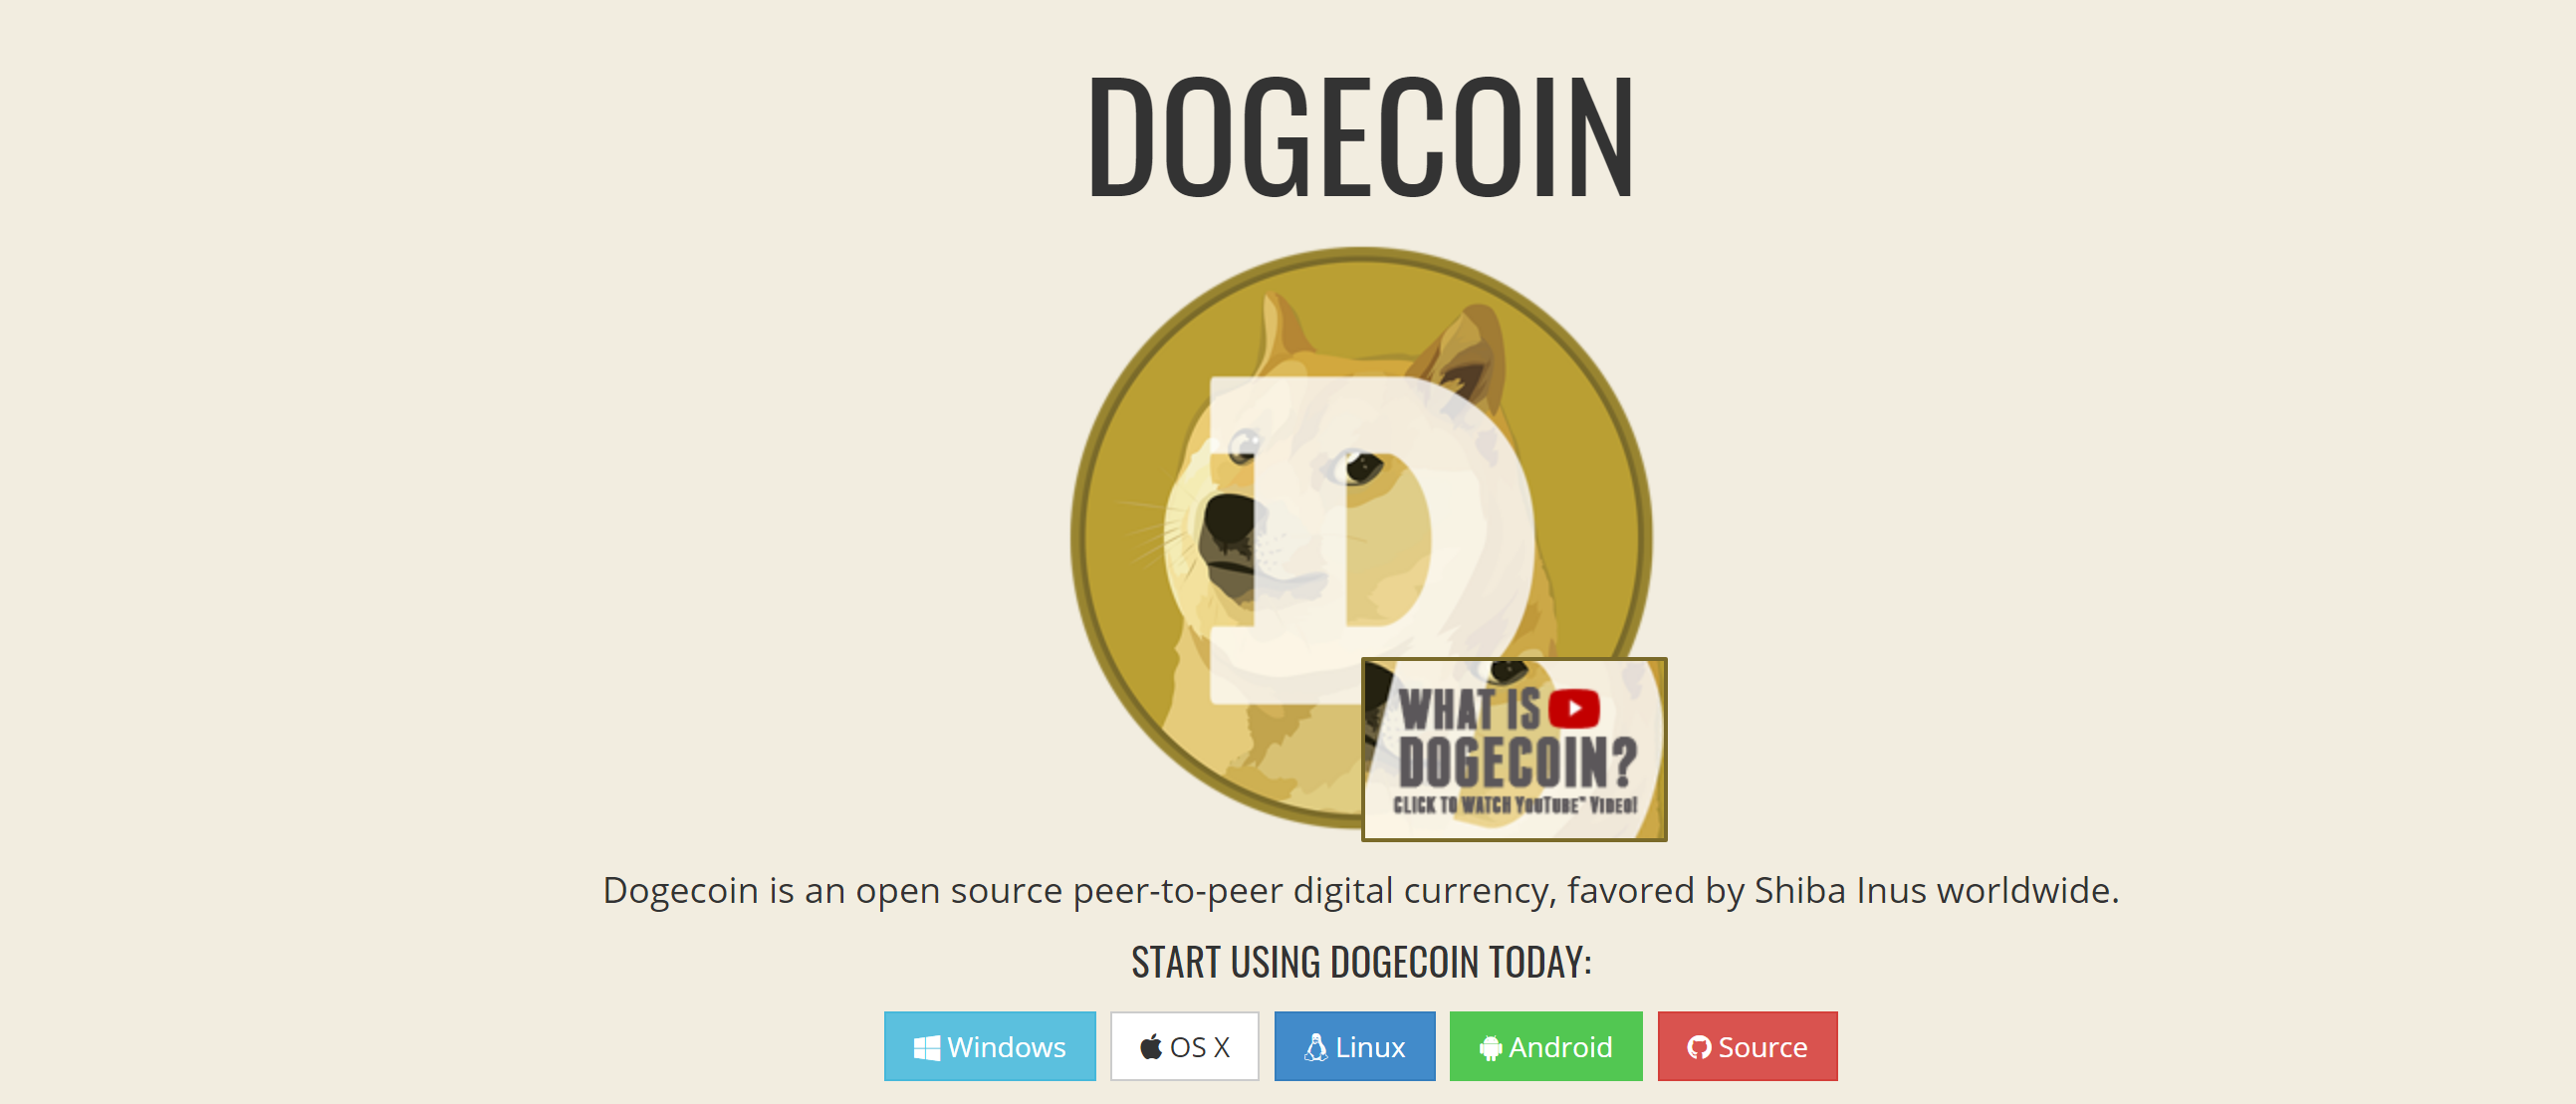 parduoti dogecoin for btc bitcoin domenų vardai